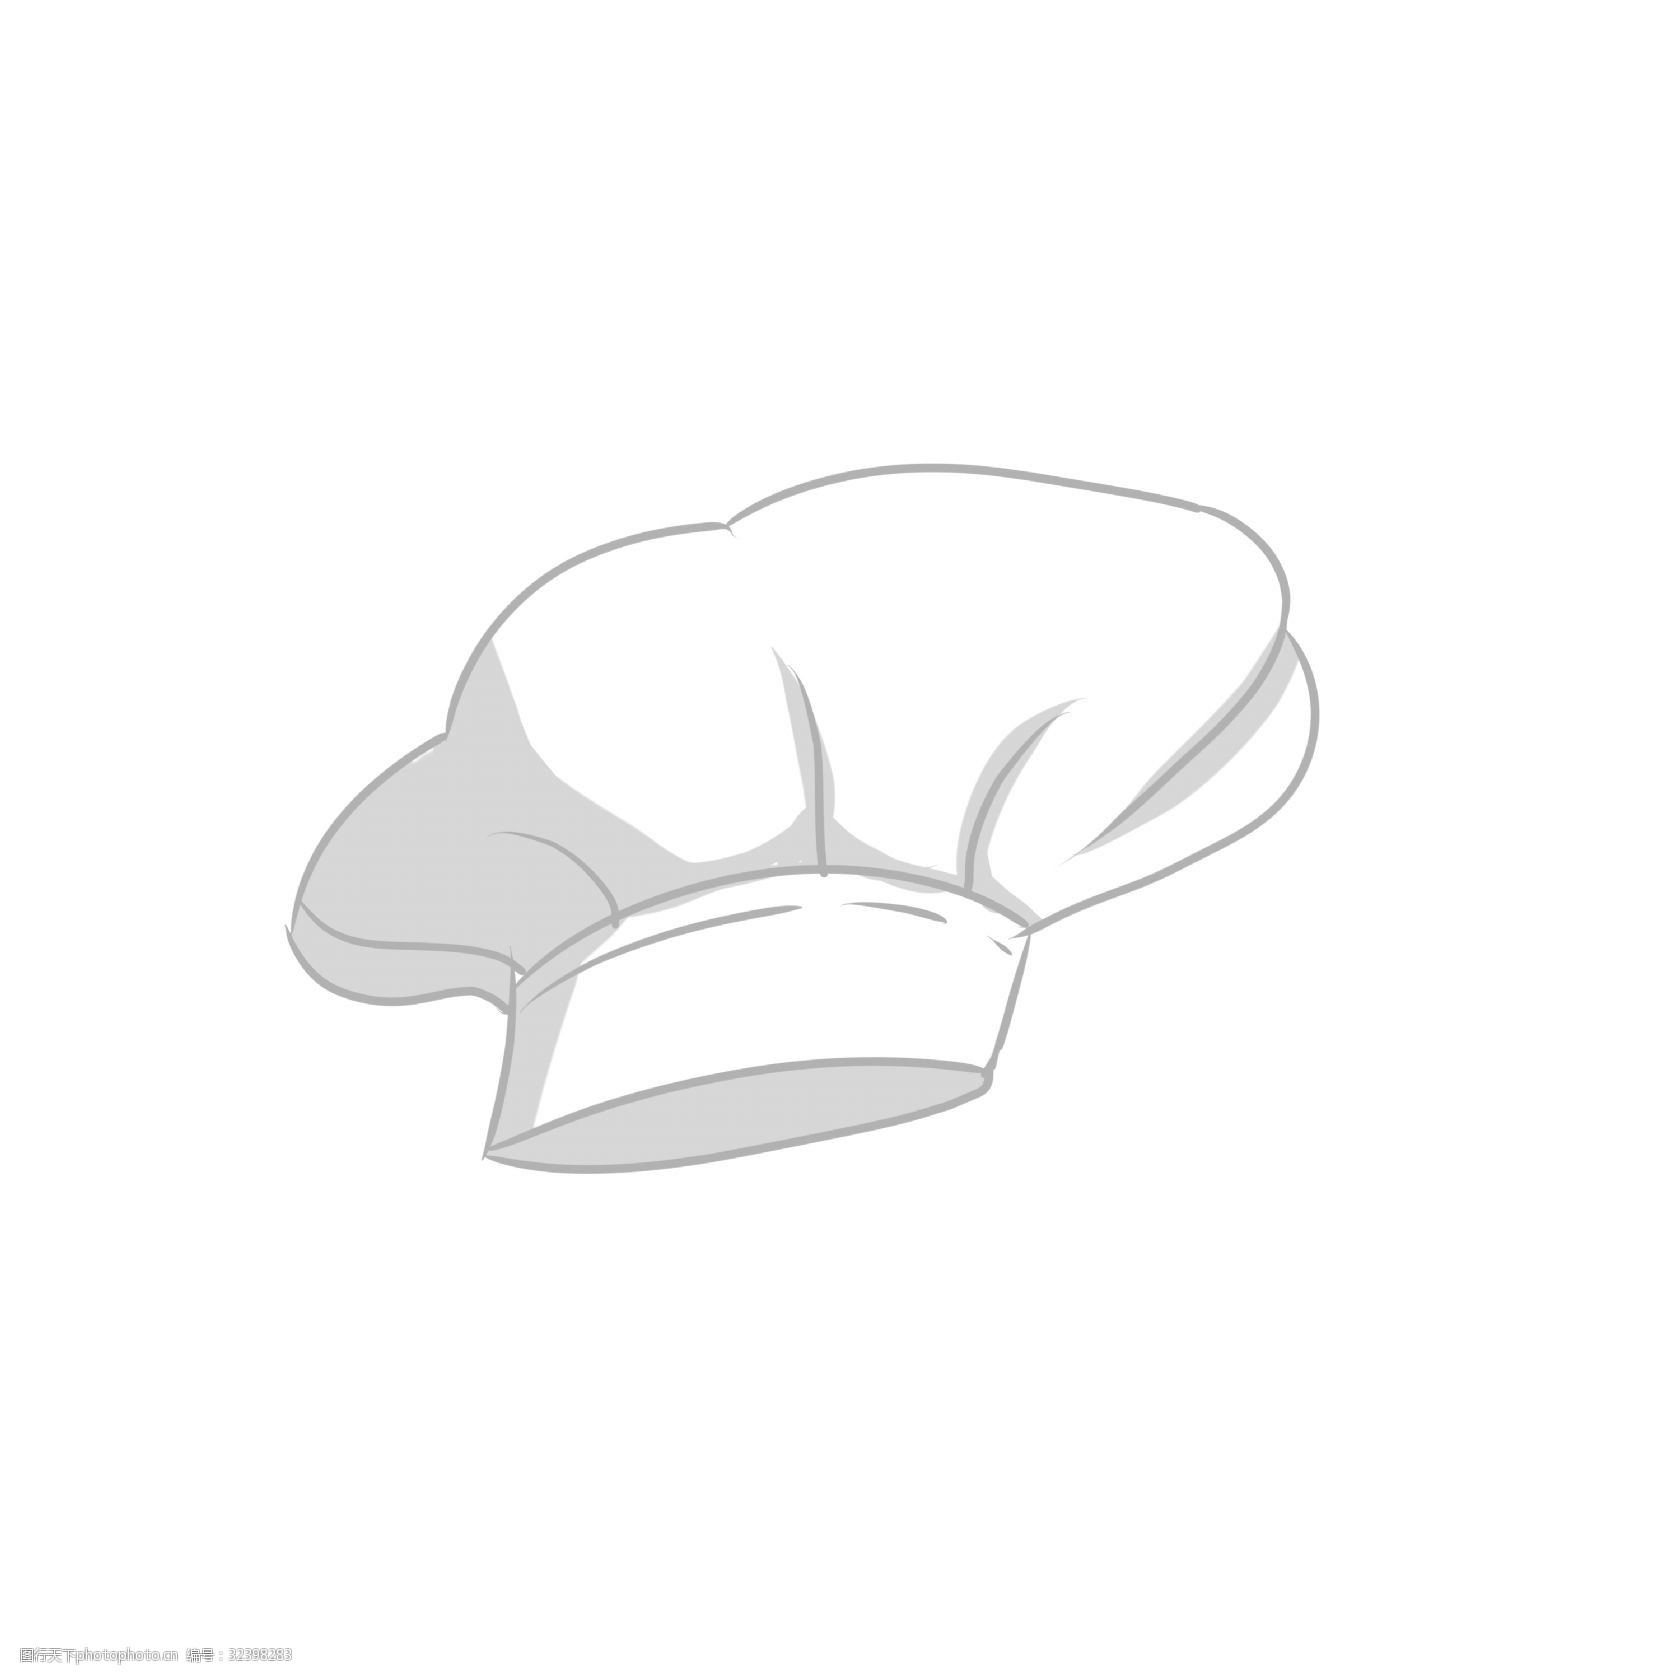 关键词:矢量图白色的厨师帽 矢量图 白色 厨师帽子 卡通手绘图 褶皱